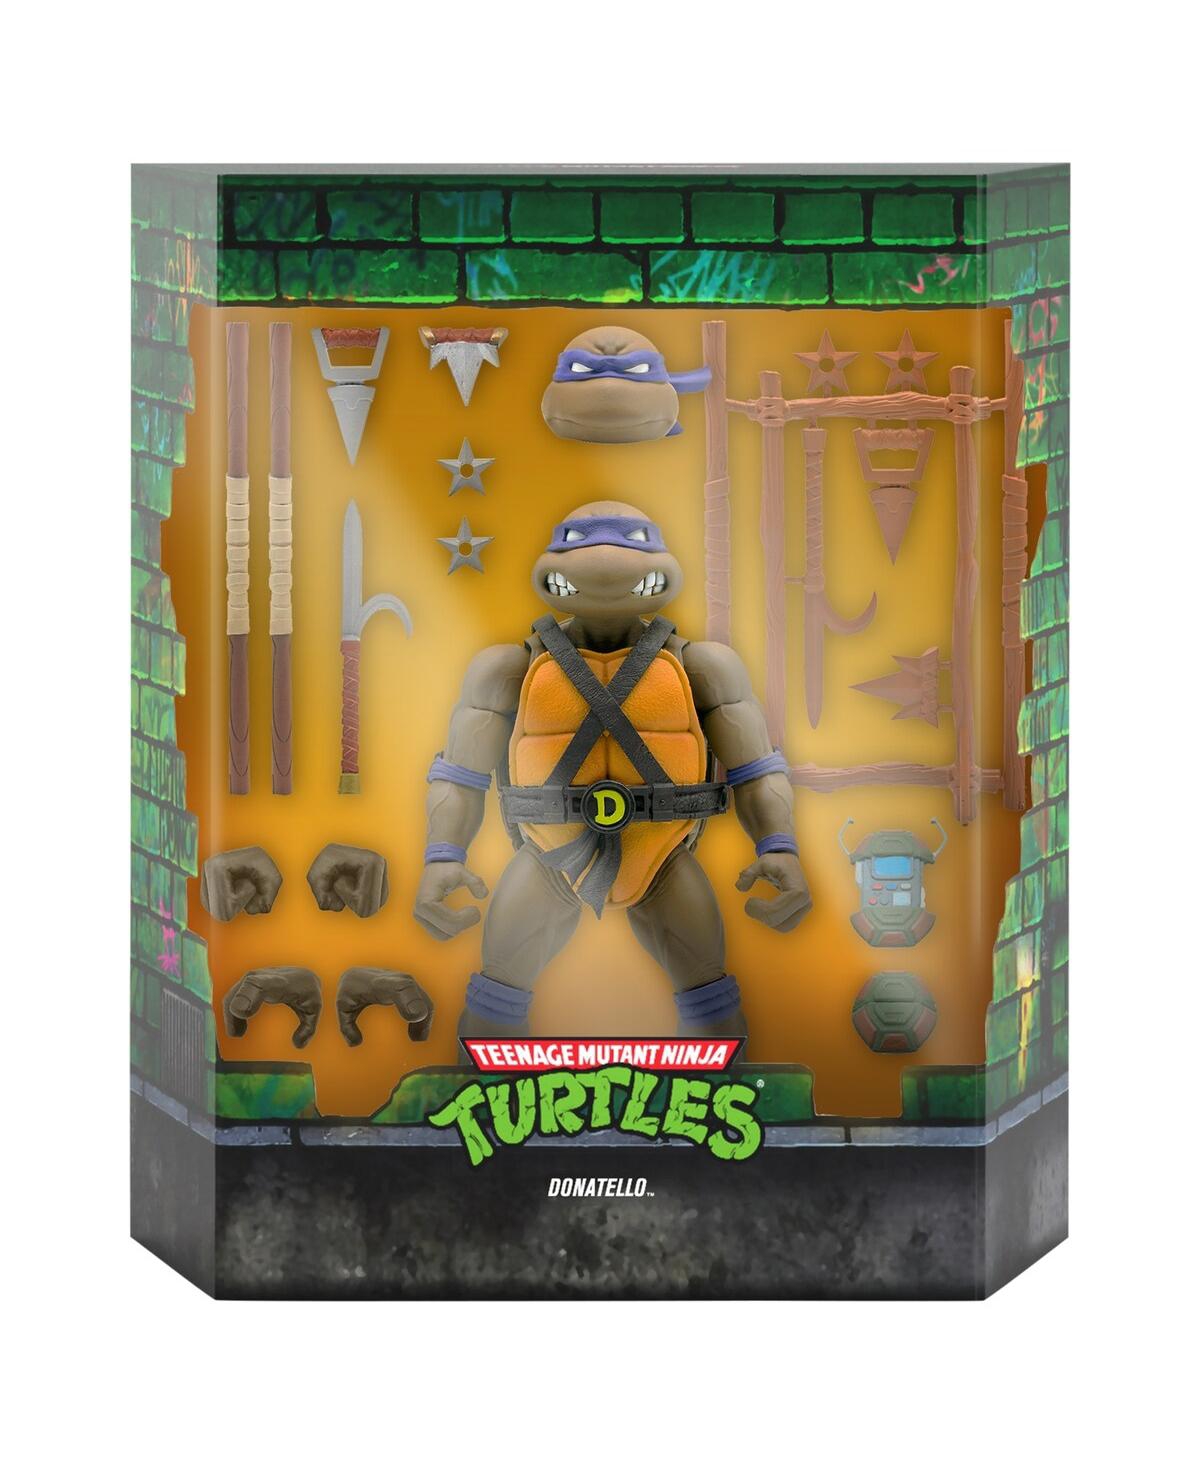 Super 7 Donatello Teenage Mutant Ninja Turtles Ultimates! Figure In Animal Print